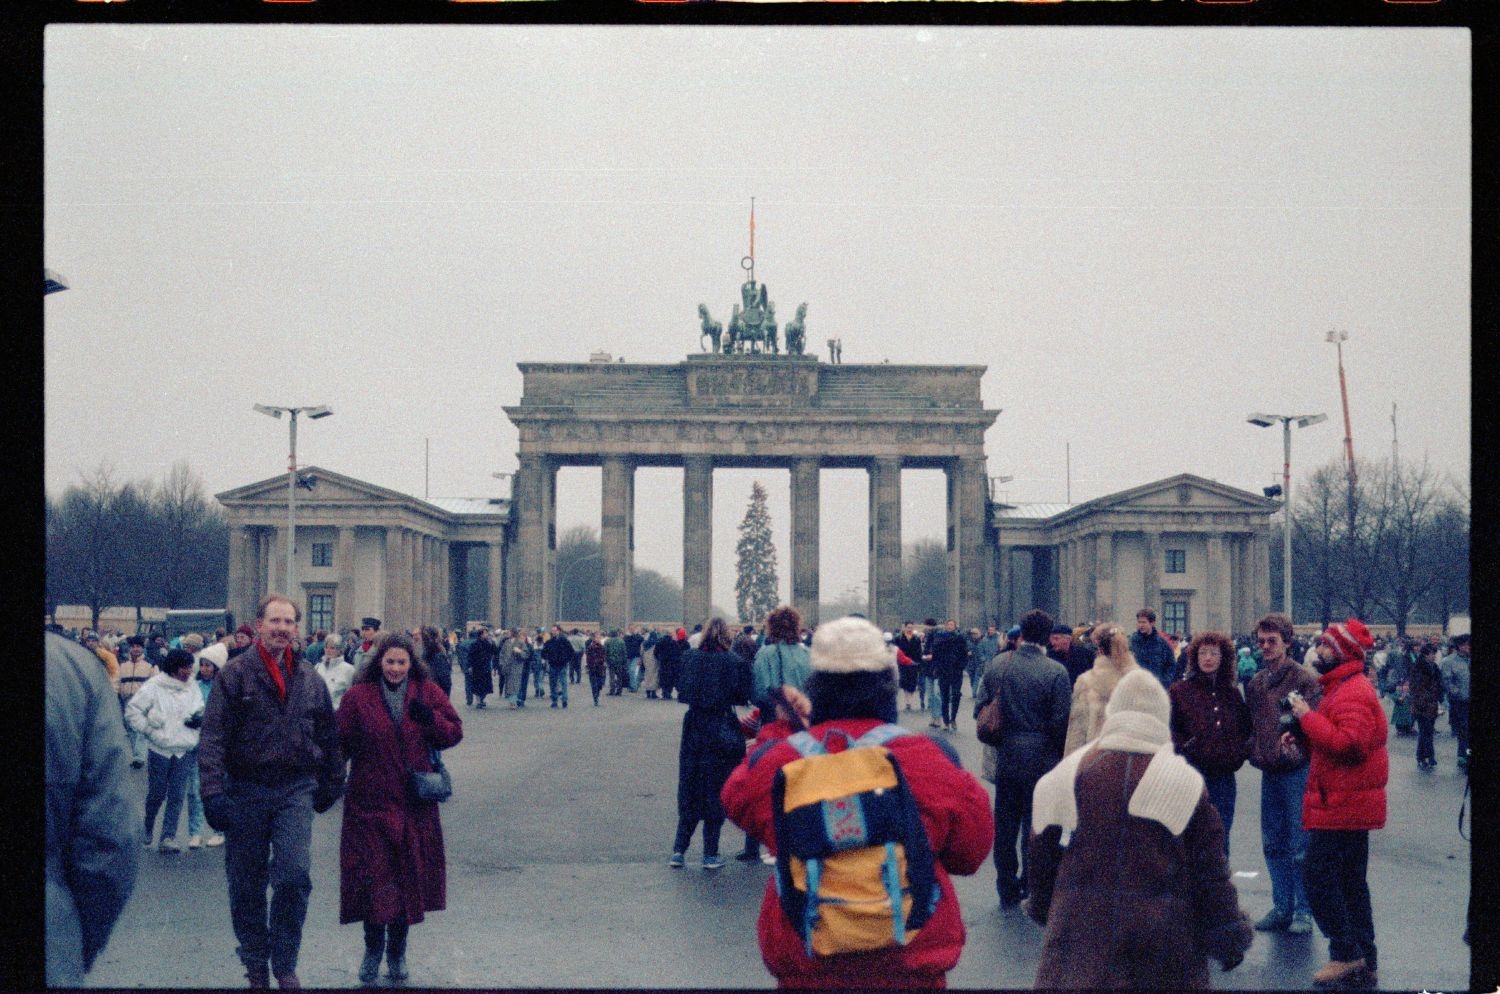 Fotografie: Erster Gesamt-Berliner Neujahrslauf 1990 in Berlin